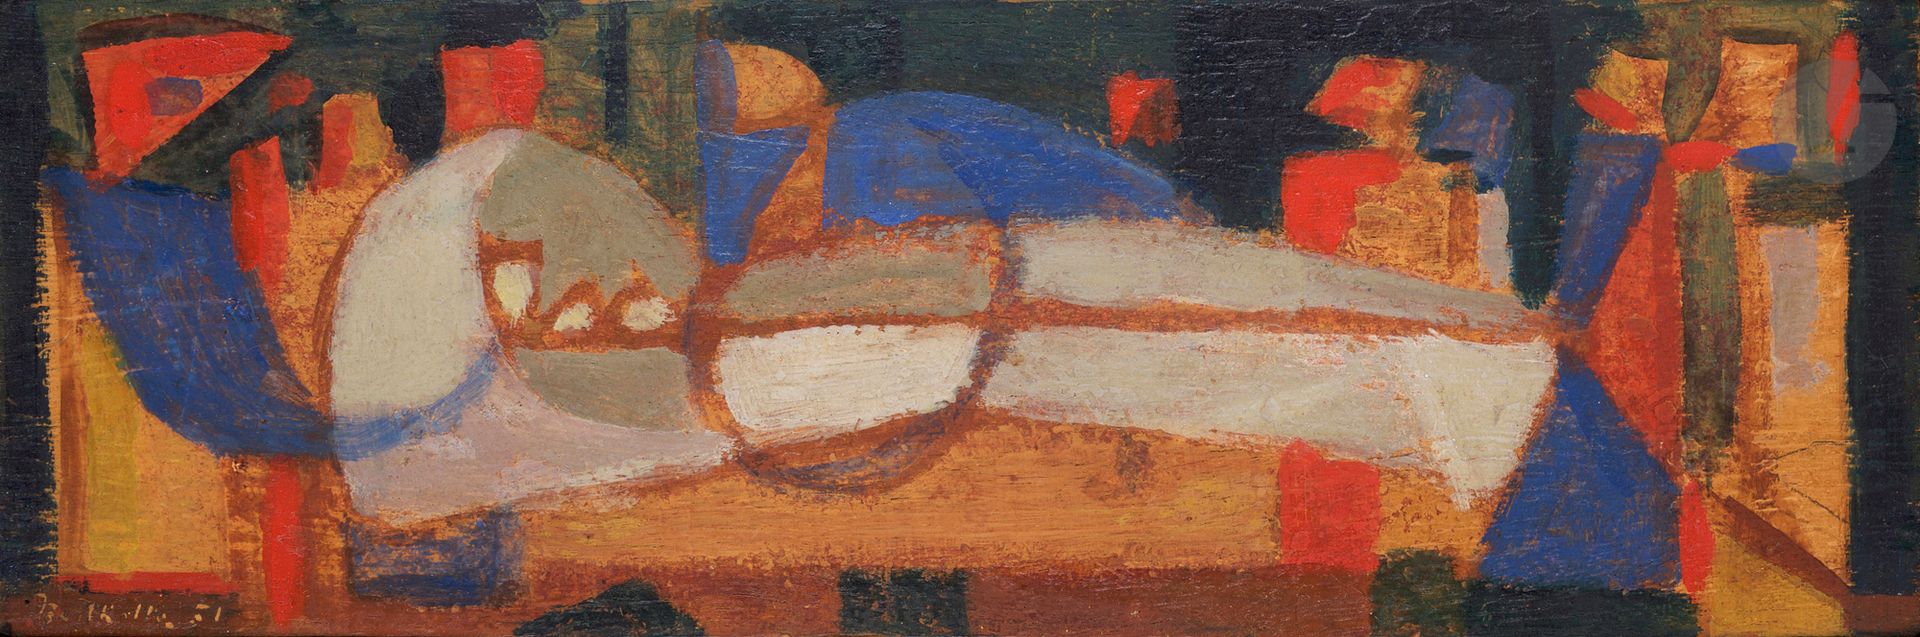 Null Jean BERTHOLLE (1909-1996
)作品，1951年油画
。
左下方有签名和日期
11 x 34 cm